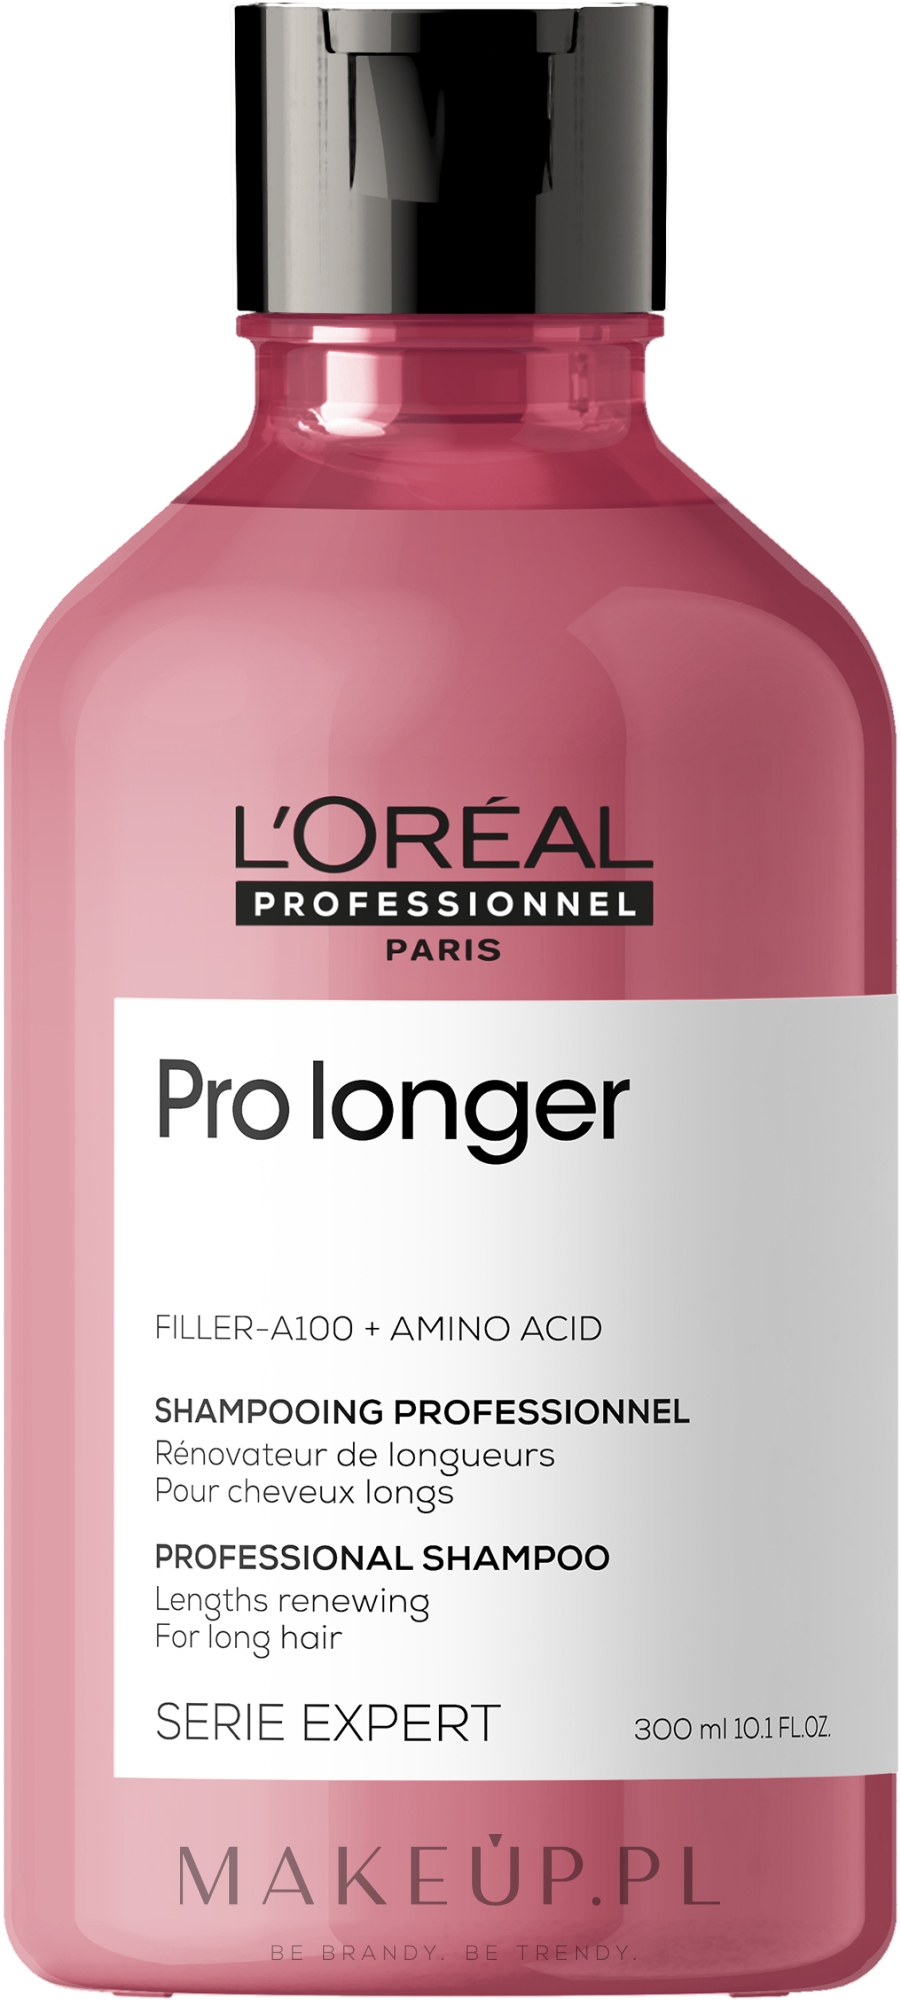 Wzmacniający szampon do włosów długich - L’Oréal Professionnel Pro Longer Lengths Renewing Shampoo New — Zdjęcie 300 ml NEW